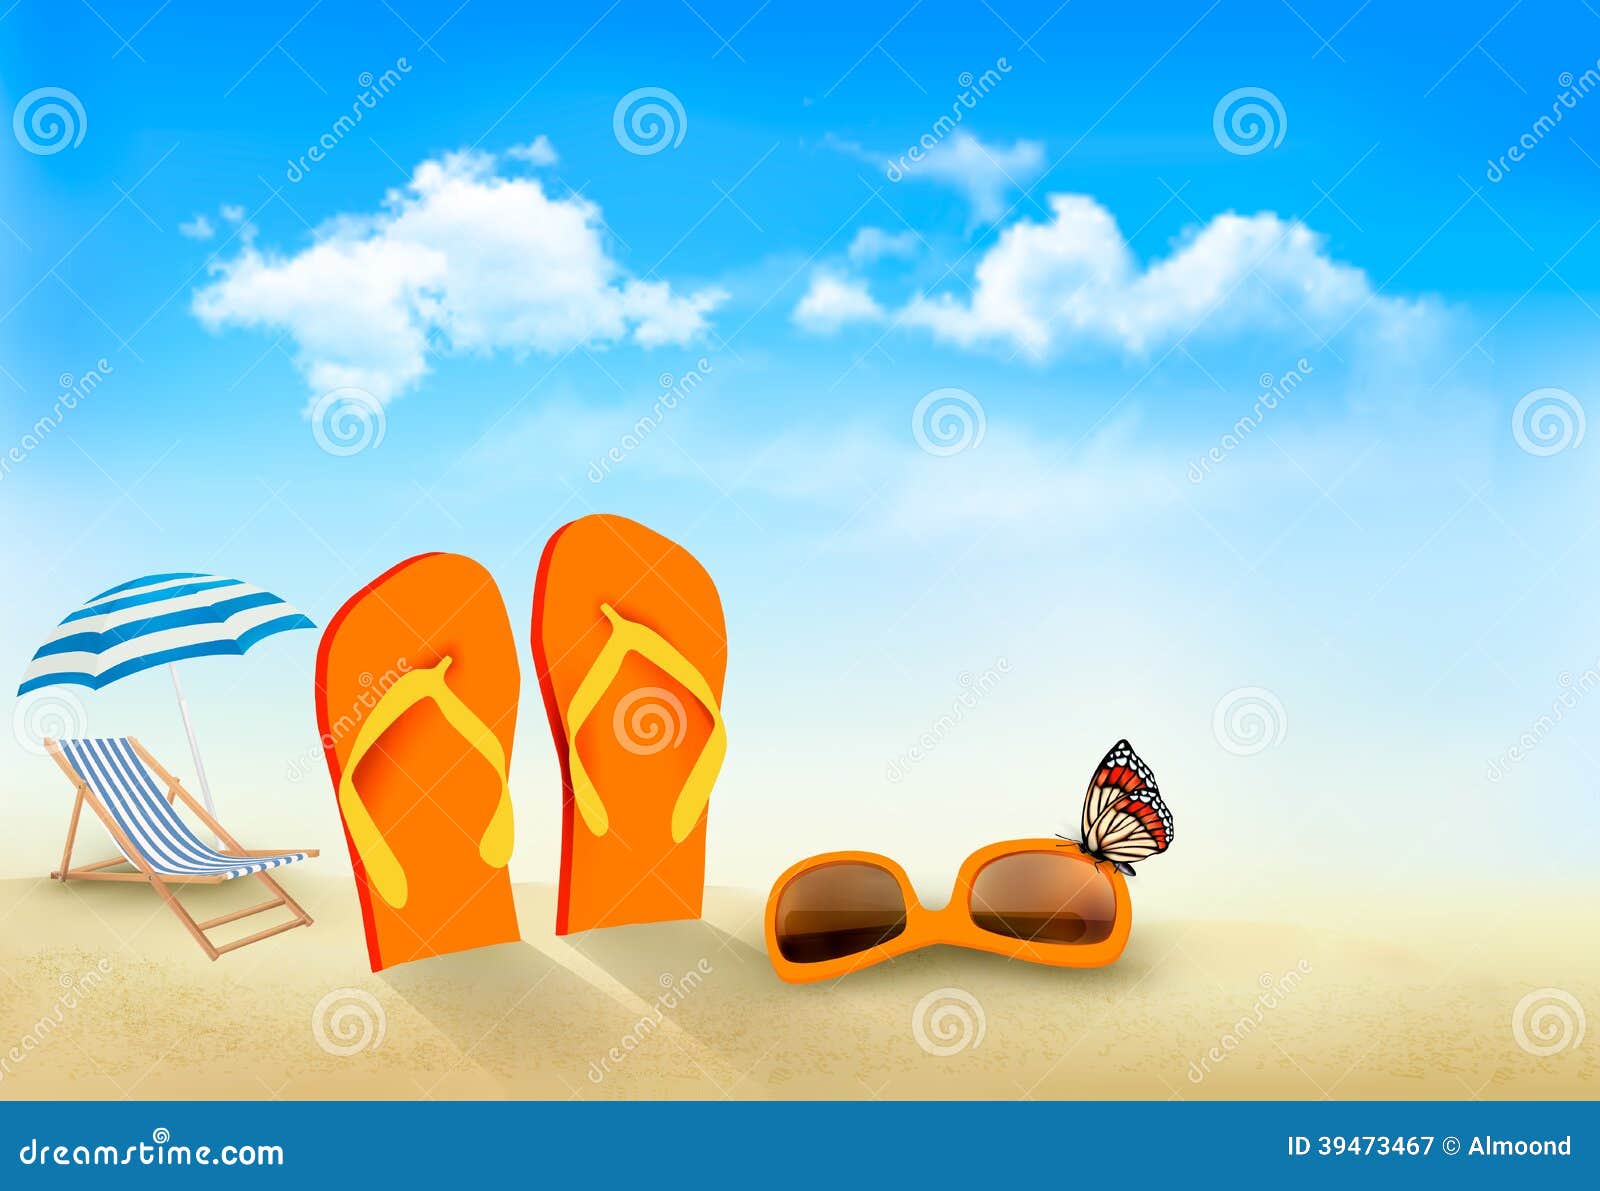 Flip Flops, Sunglasses, Beach Chair and a Butterfl Stock Vector ...